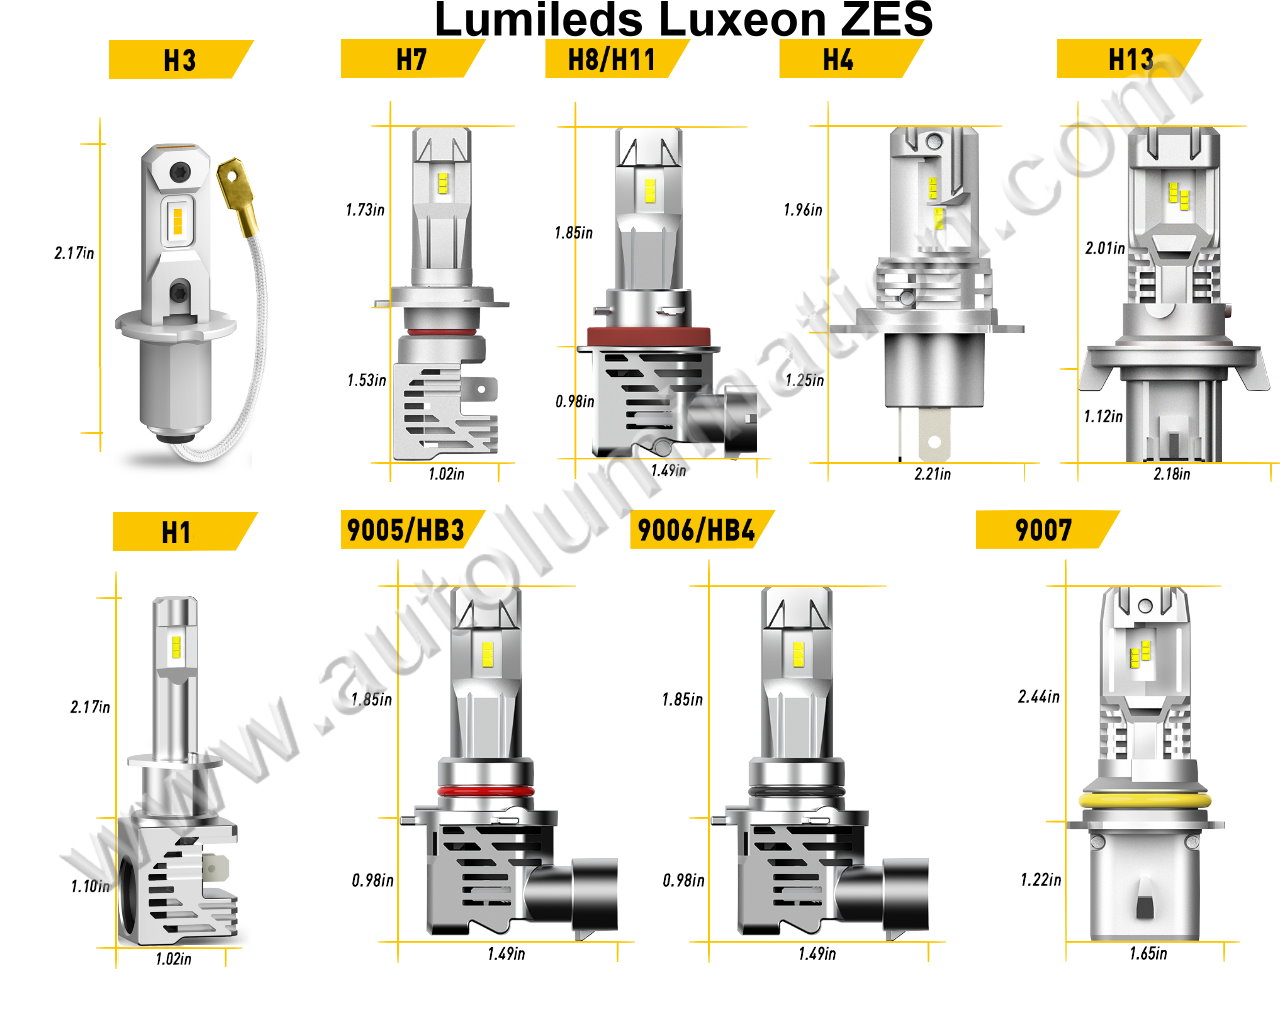 ZES Lumileds 6000K Super White LED High Powered Headlight Bulb